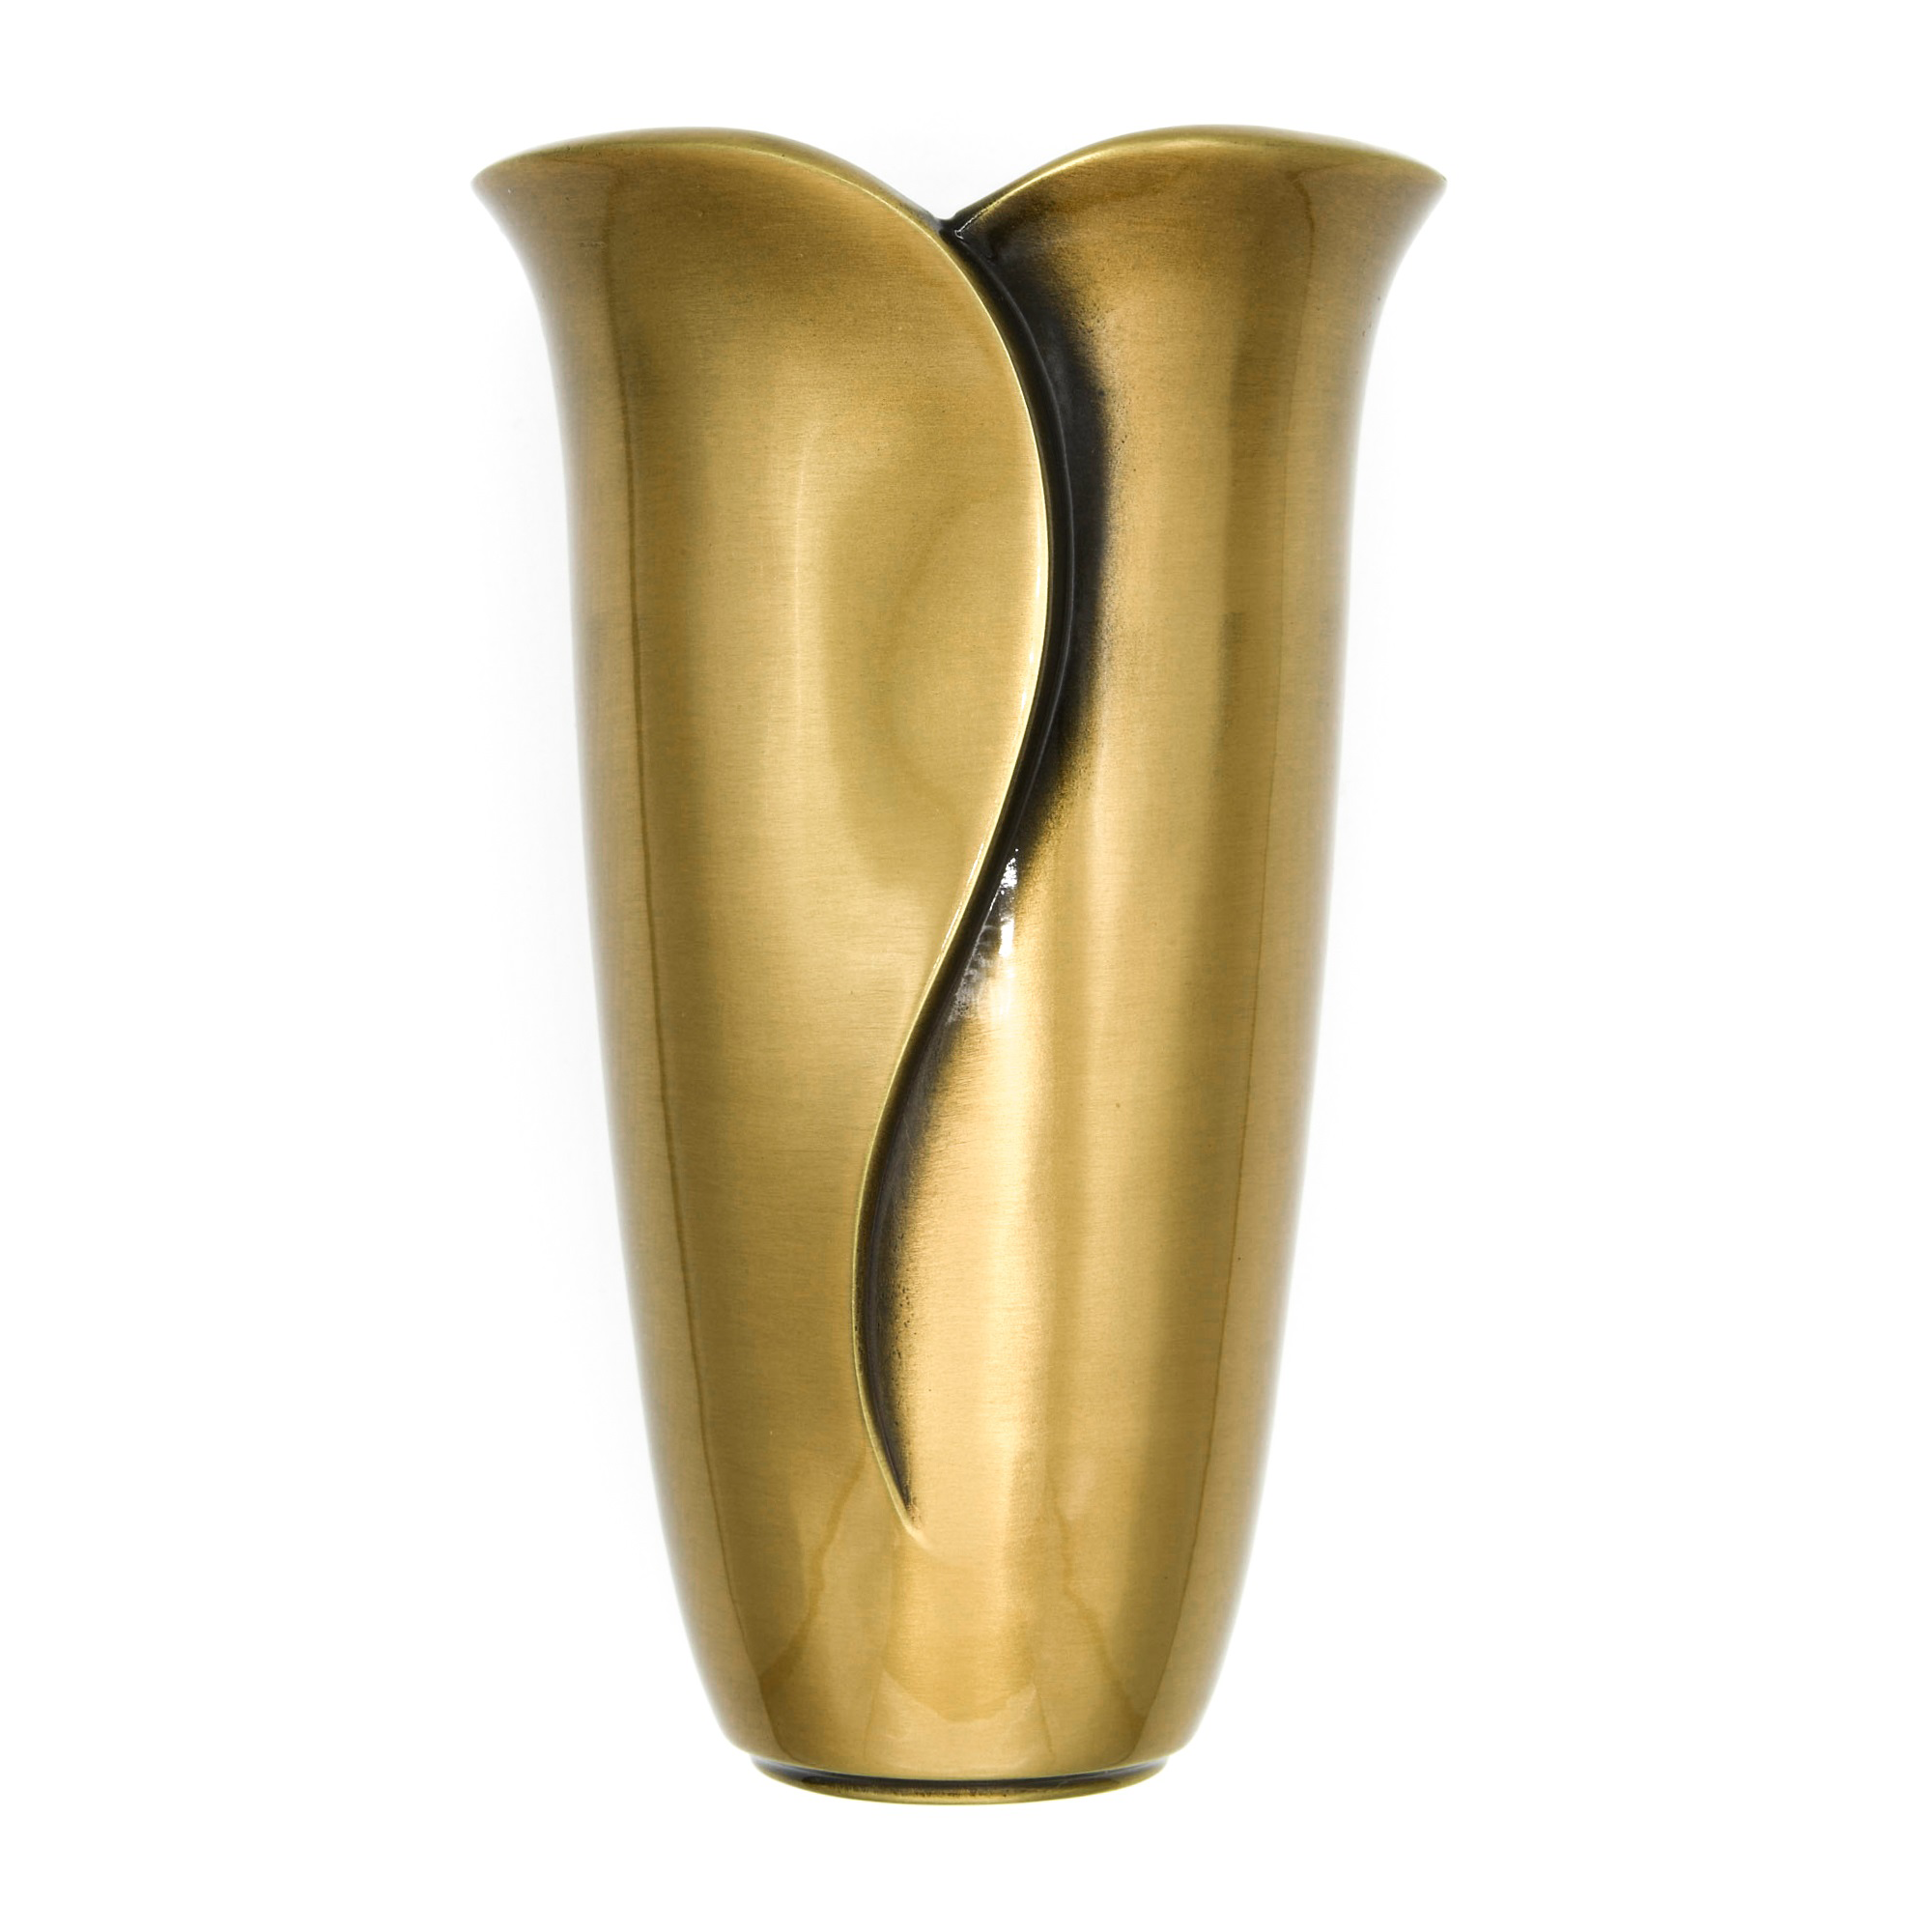 Elegance Vase – remov. ins. 4″ x 6.5″